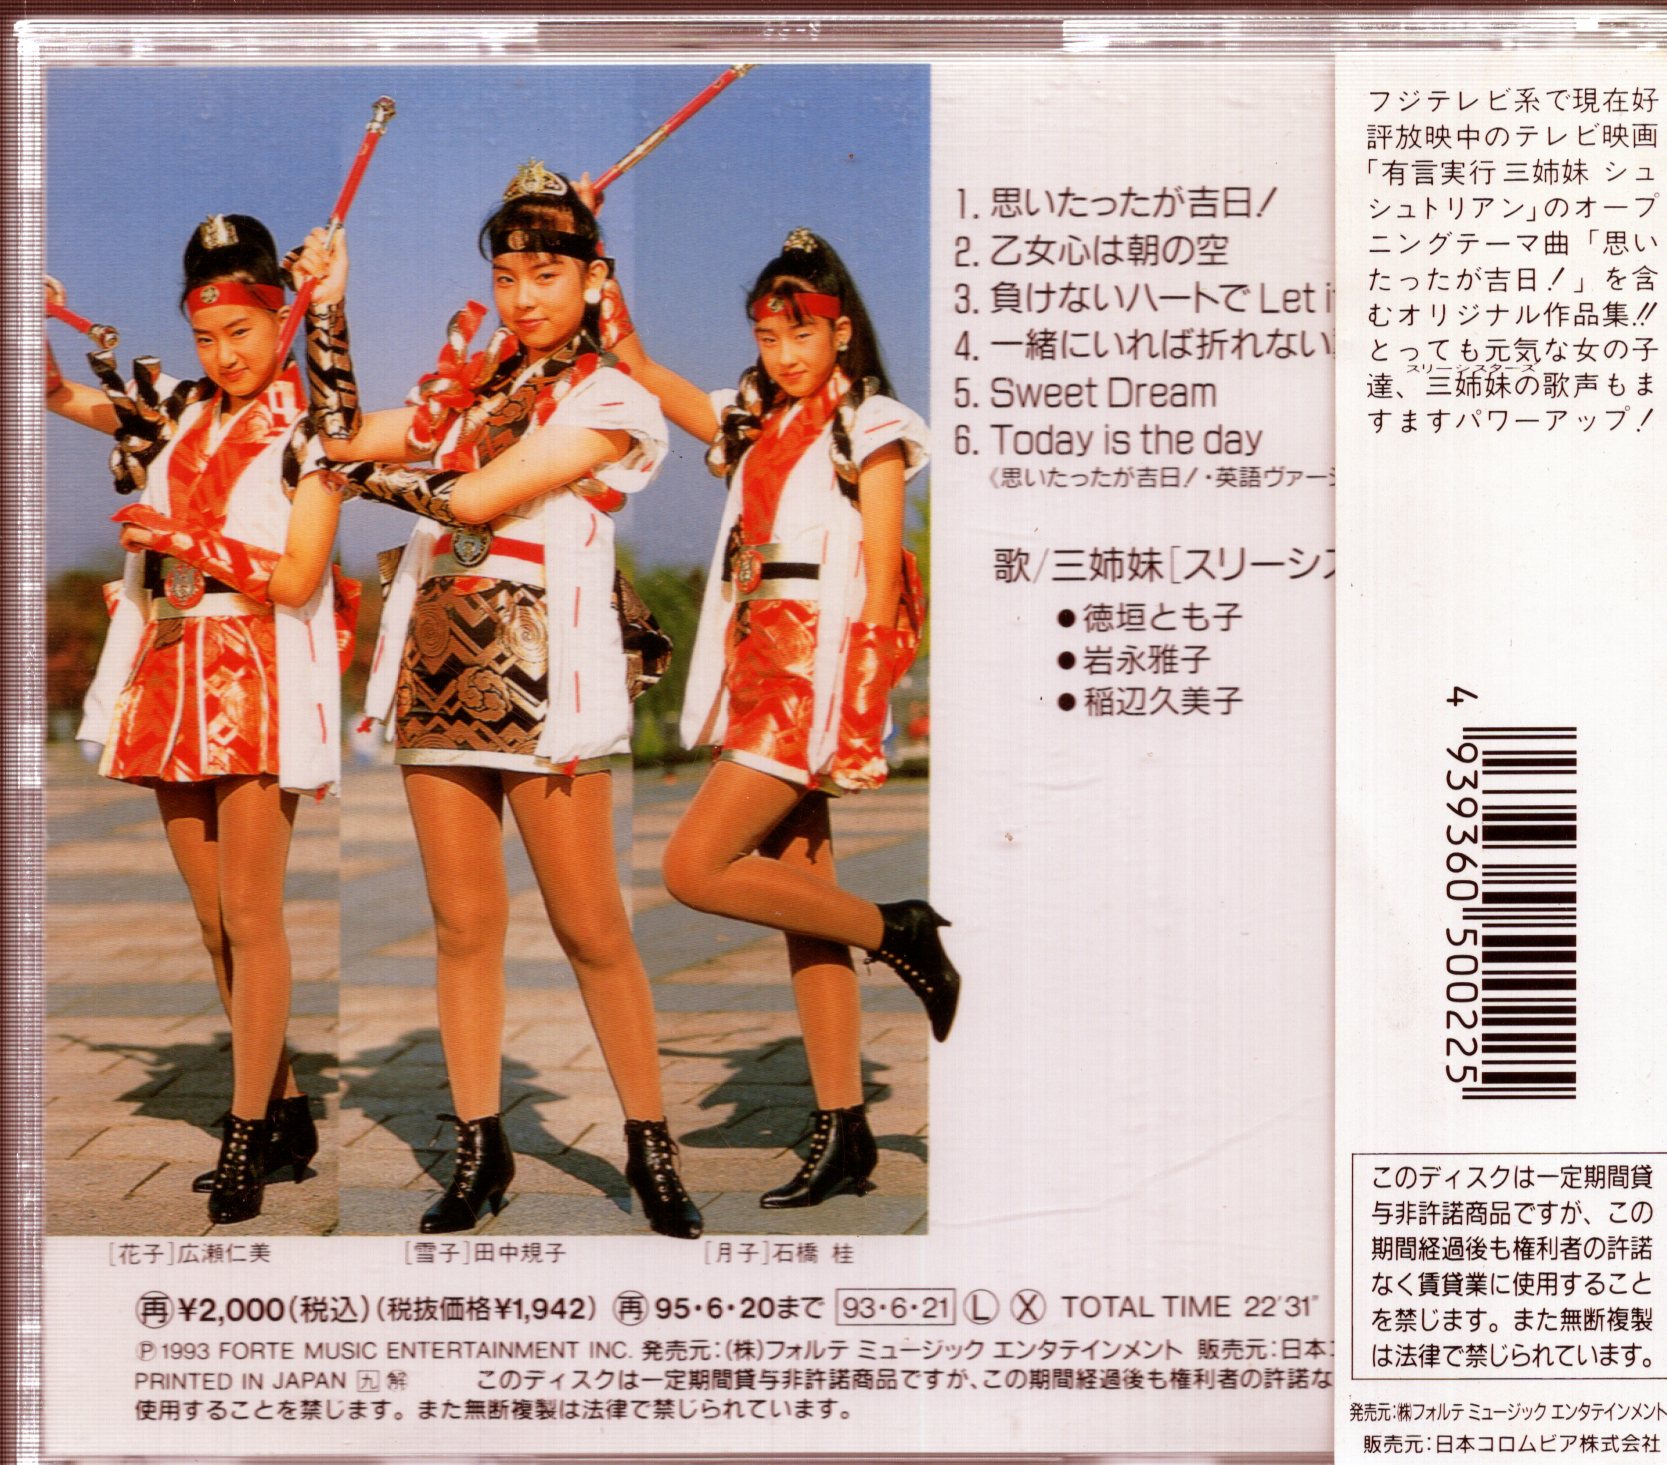 DVD 有言実行三姉妹シュシュトリアン VOL.2 東映ビデオ - 邦画・日本映画